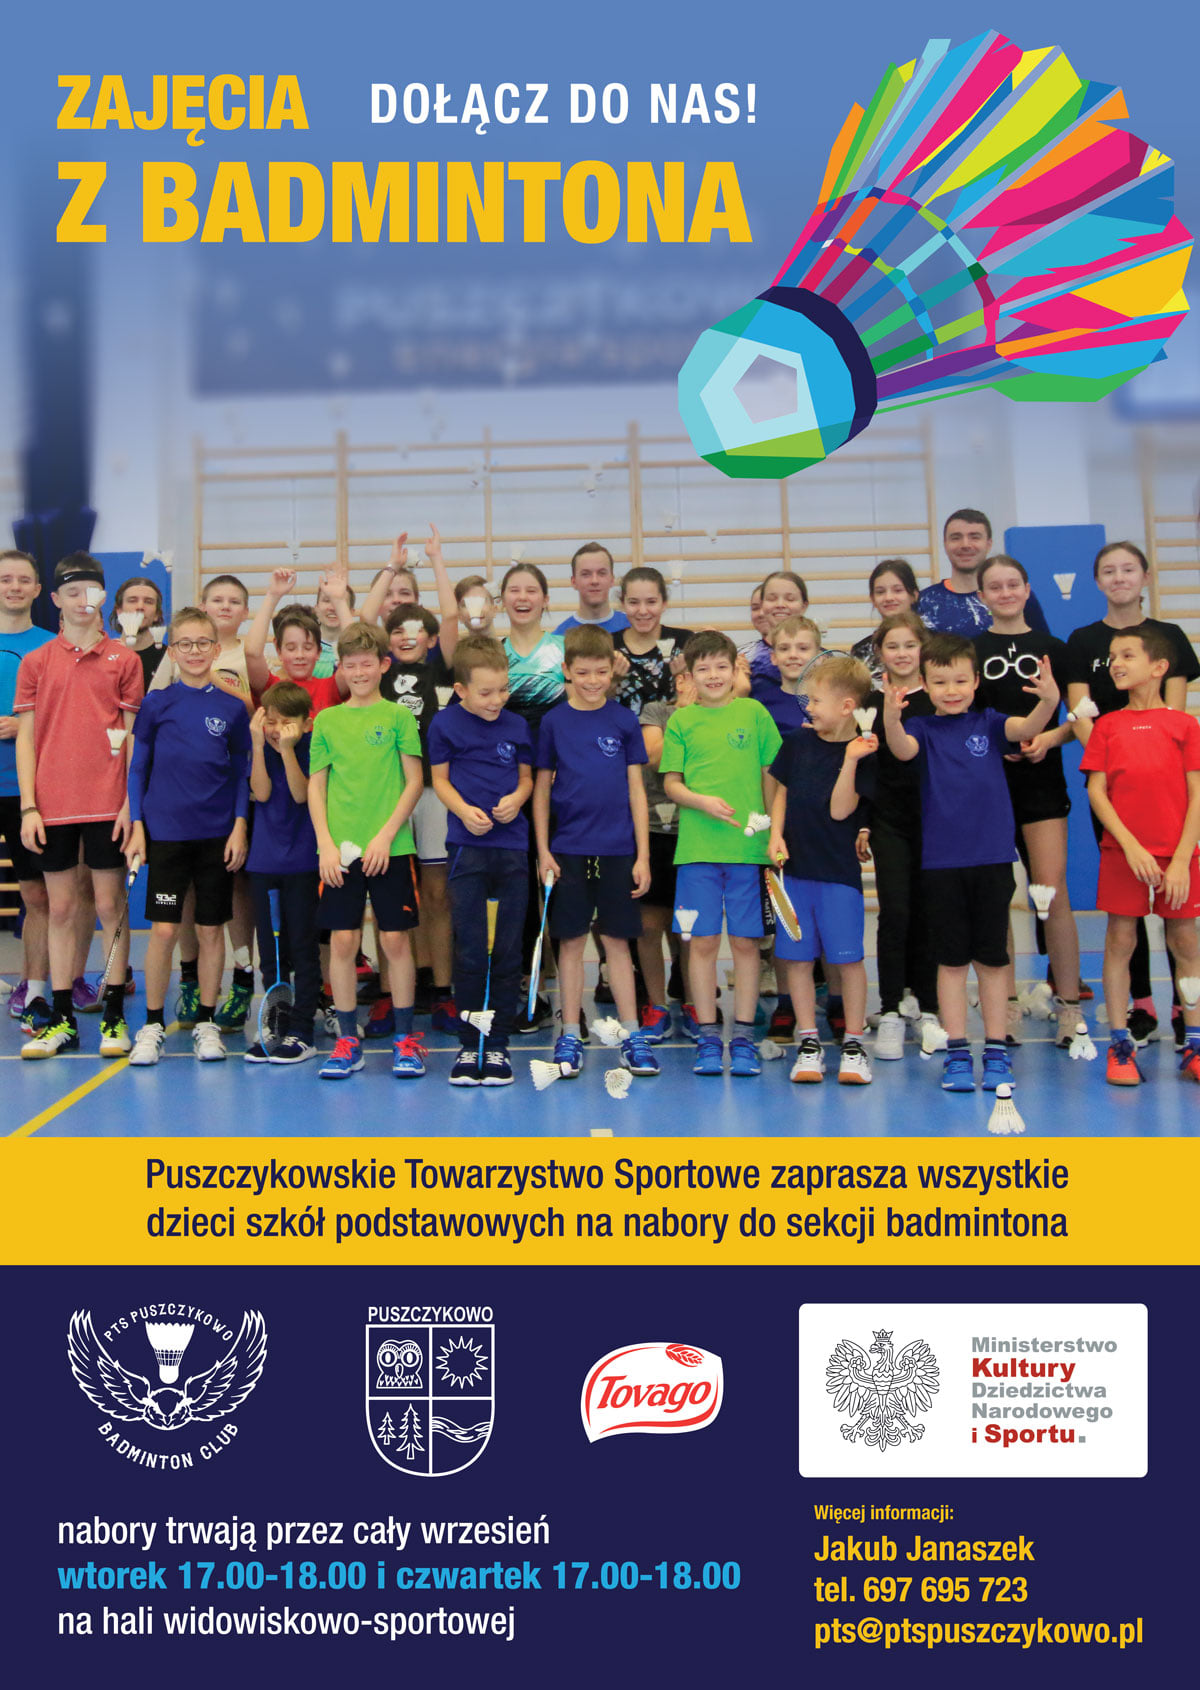 Puszczykowskie Towarzystwo Sportowe zaprasza wszystkie dzieci szkół podstawowych na nabory do sekcji badmintona.